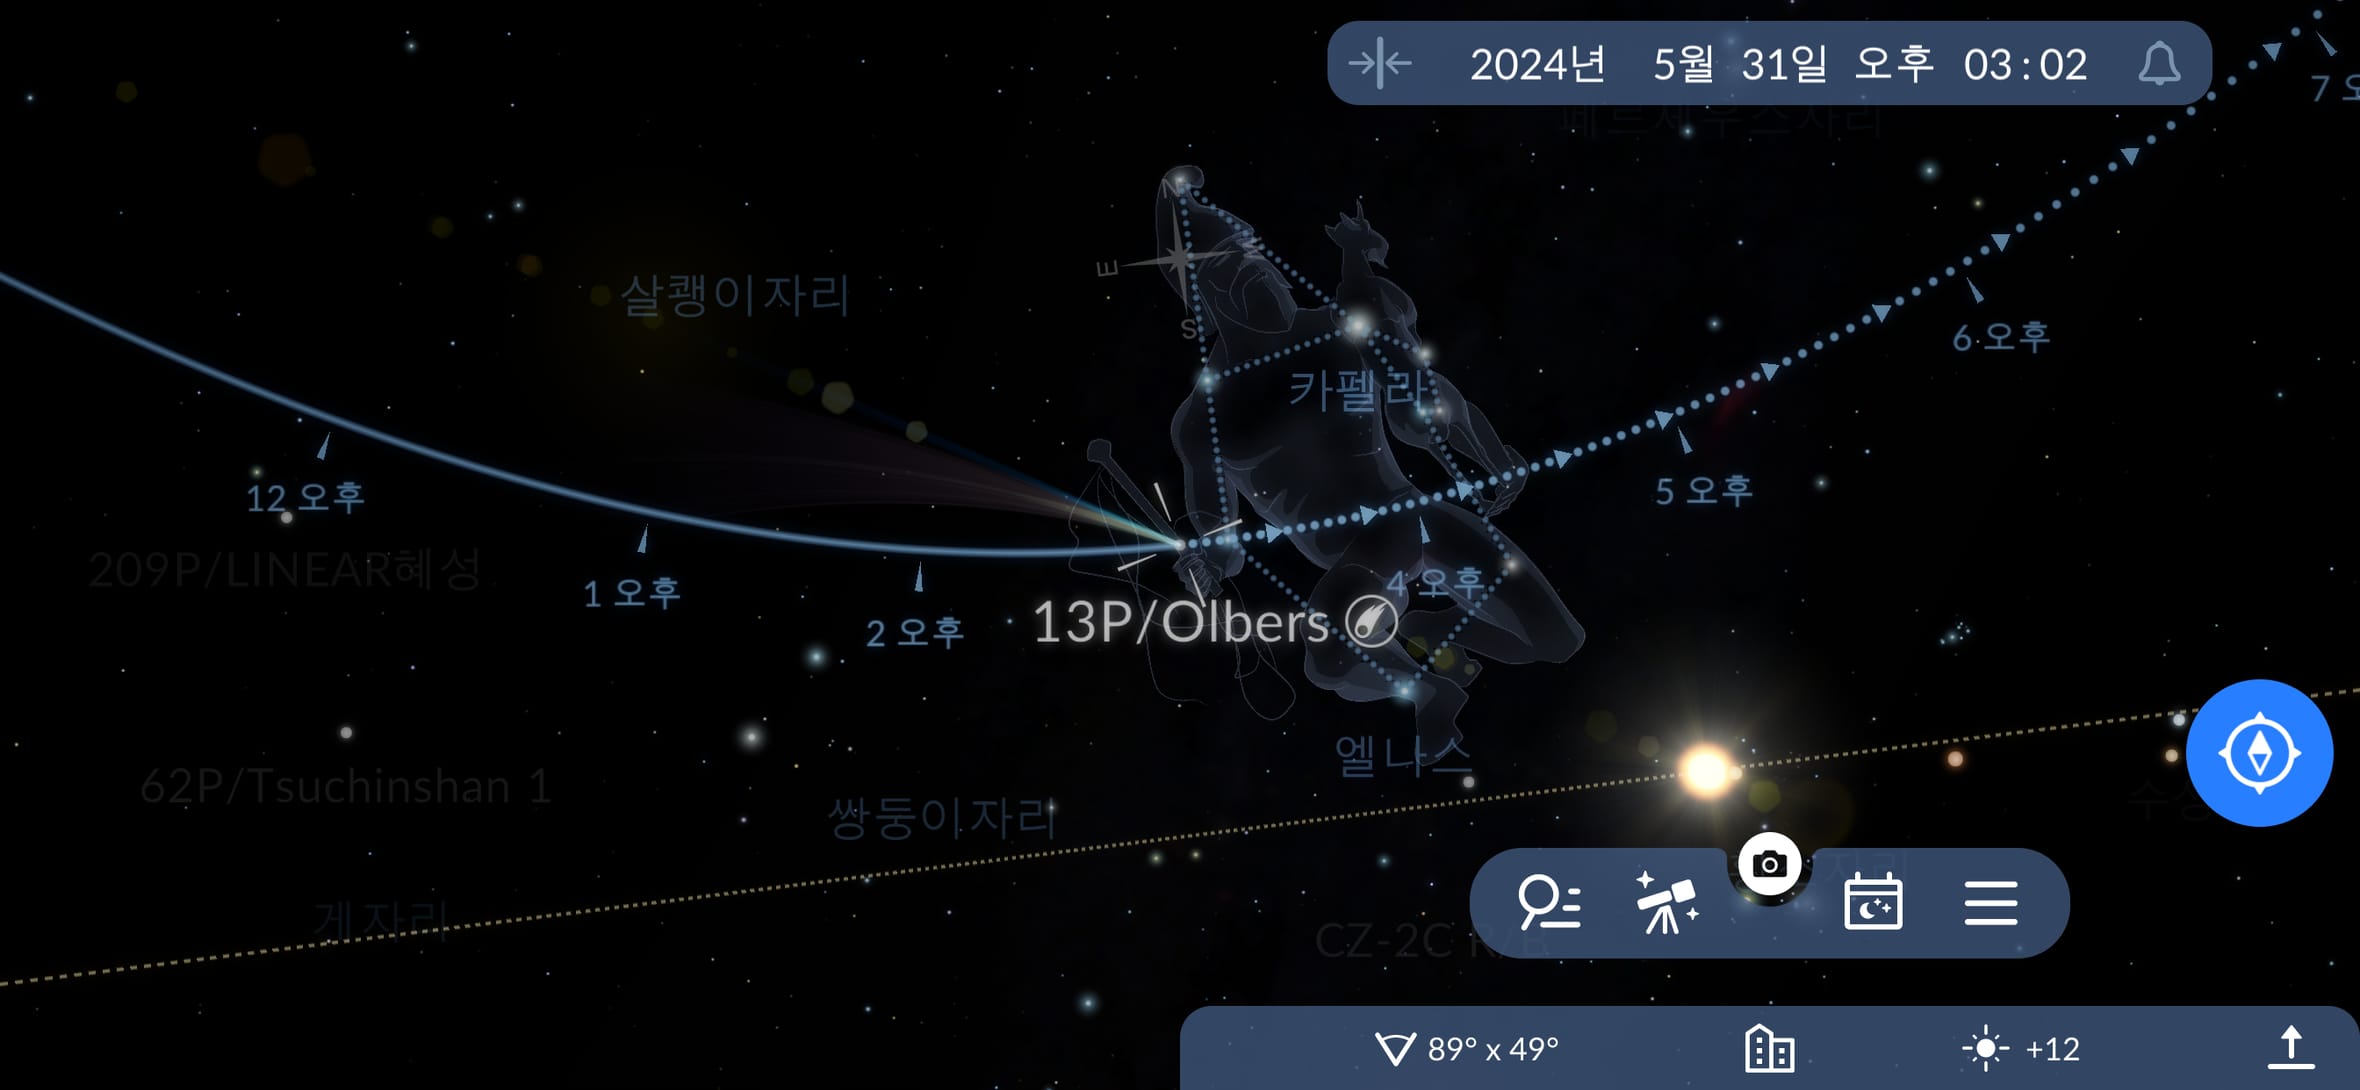 하늘에서 올베르 혜성을 찾는 방법